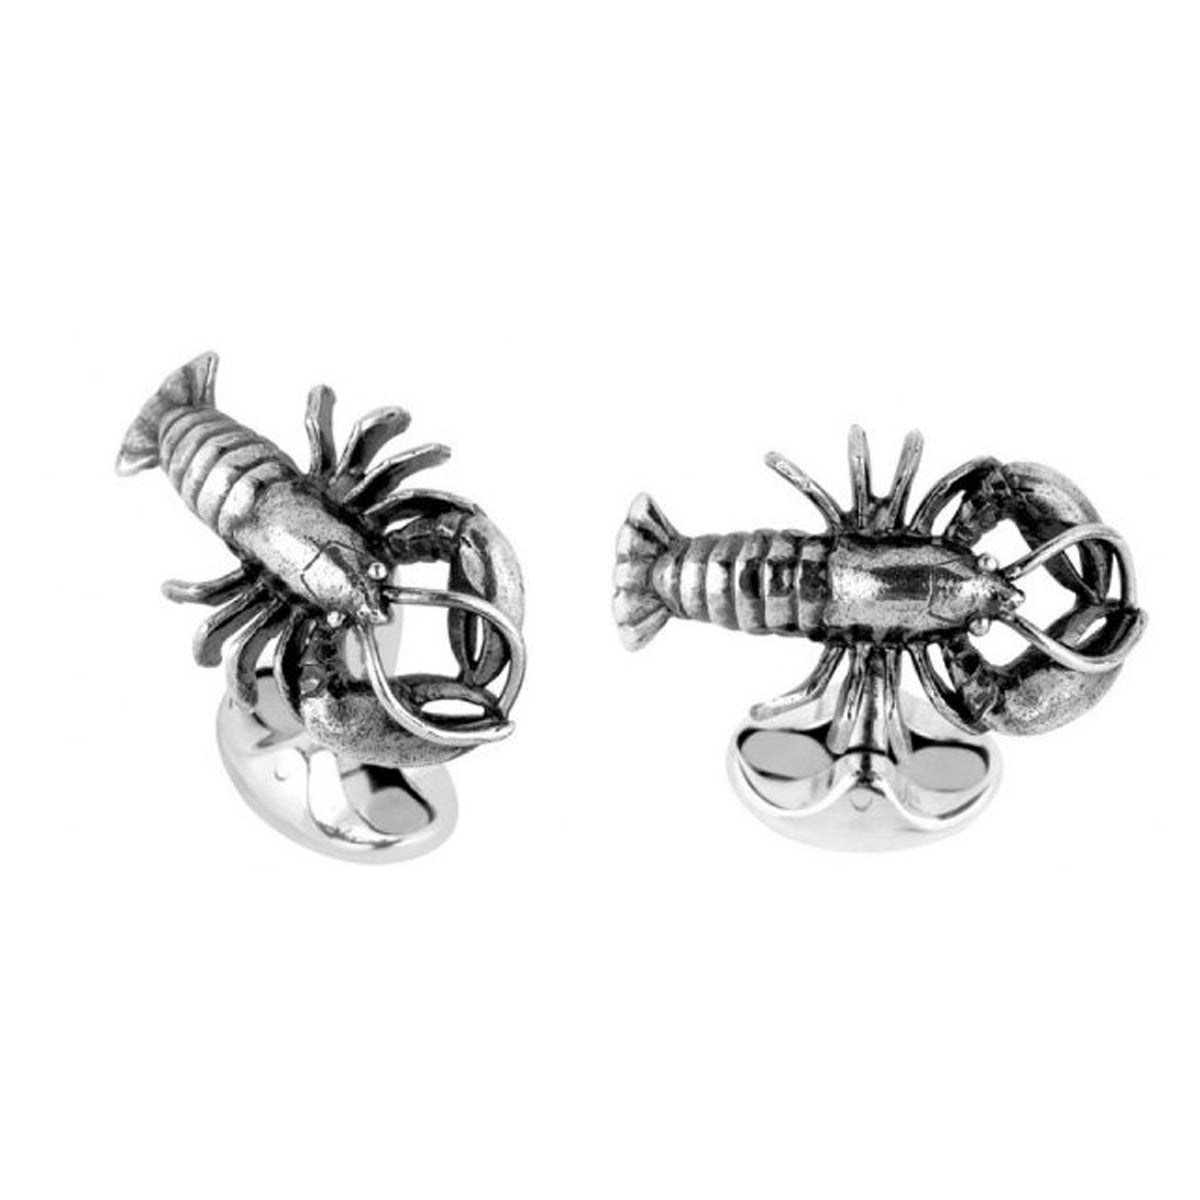 Deakin & Francis Sterling Silver Springback Lobster Cufflinks